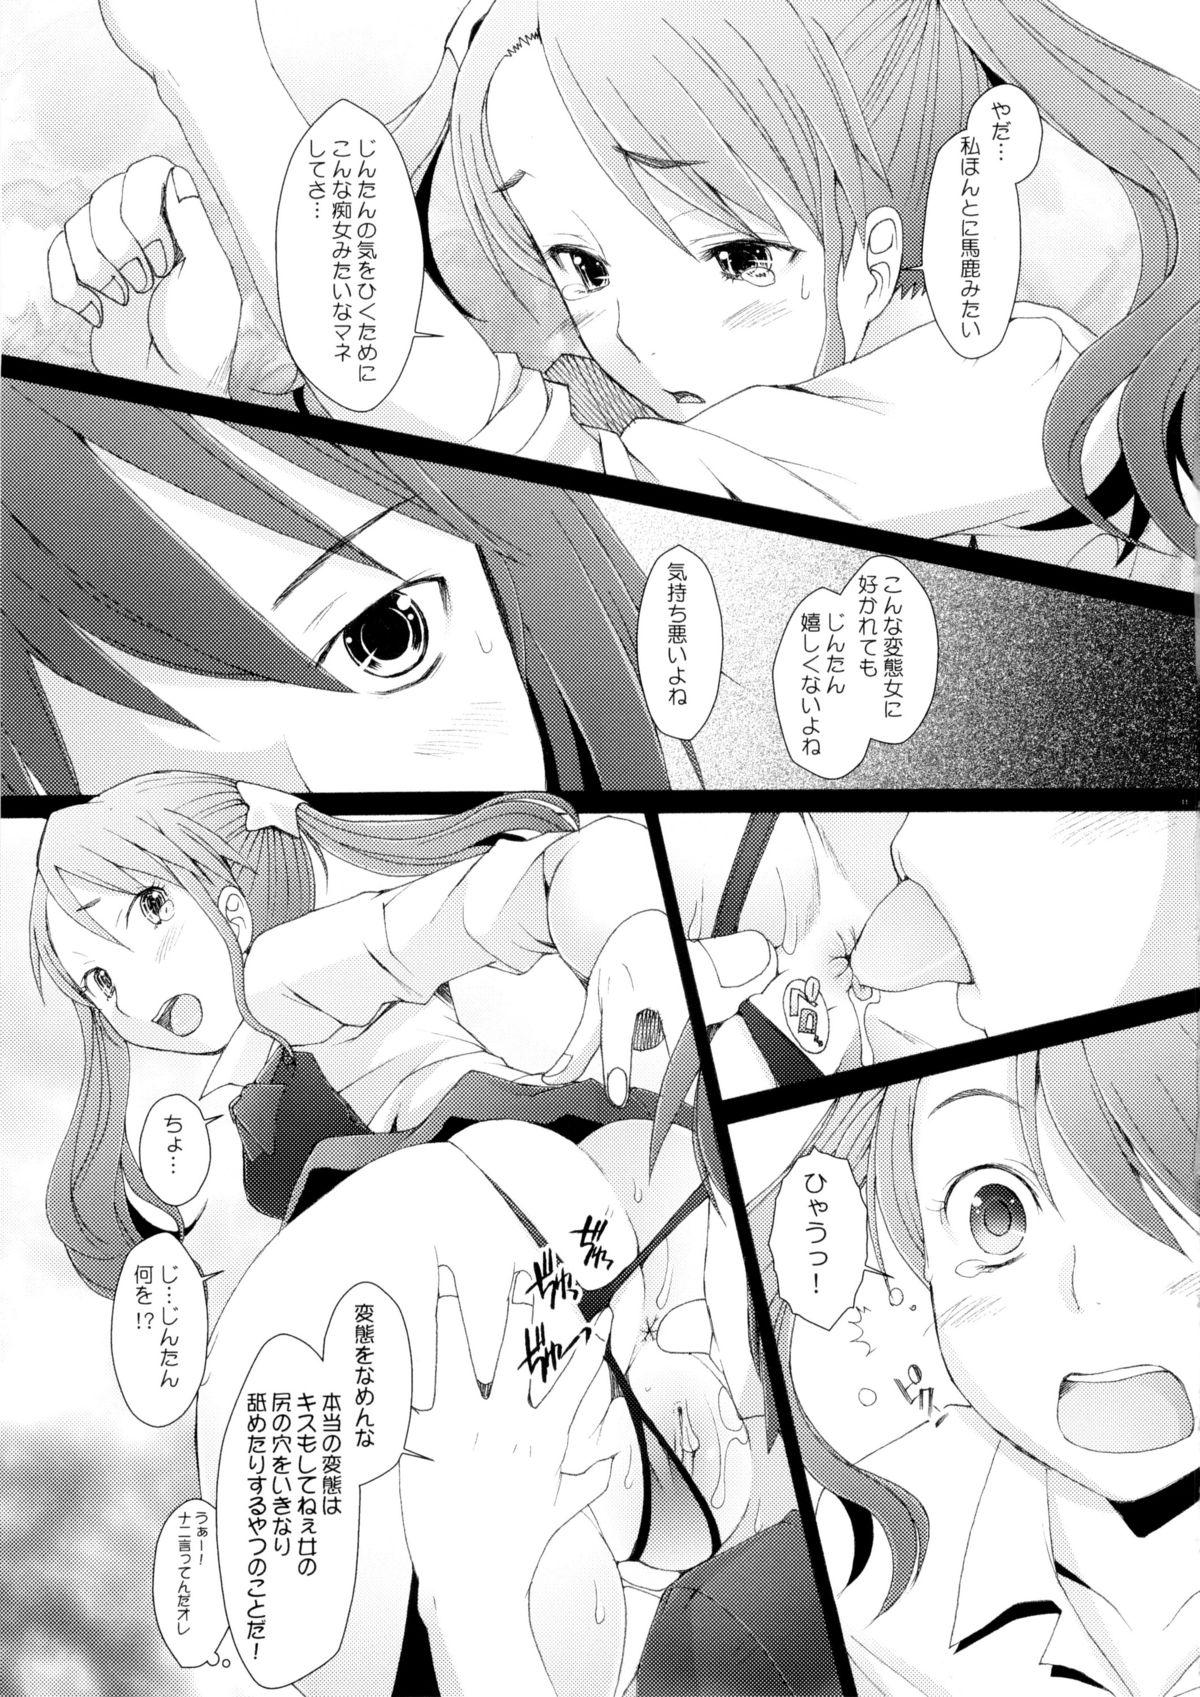 Kinky Ano Hi Mita Hana no Namae wo Bokutachi wa Keshite Wasurenai - Ano hi mita hana no namae wo bokutachi wa mada shiranai Real Sex - Page 10